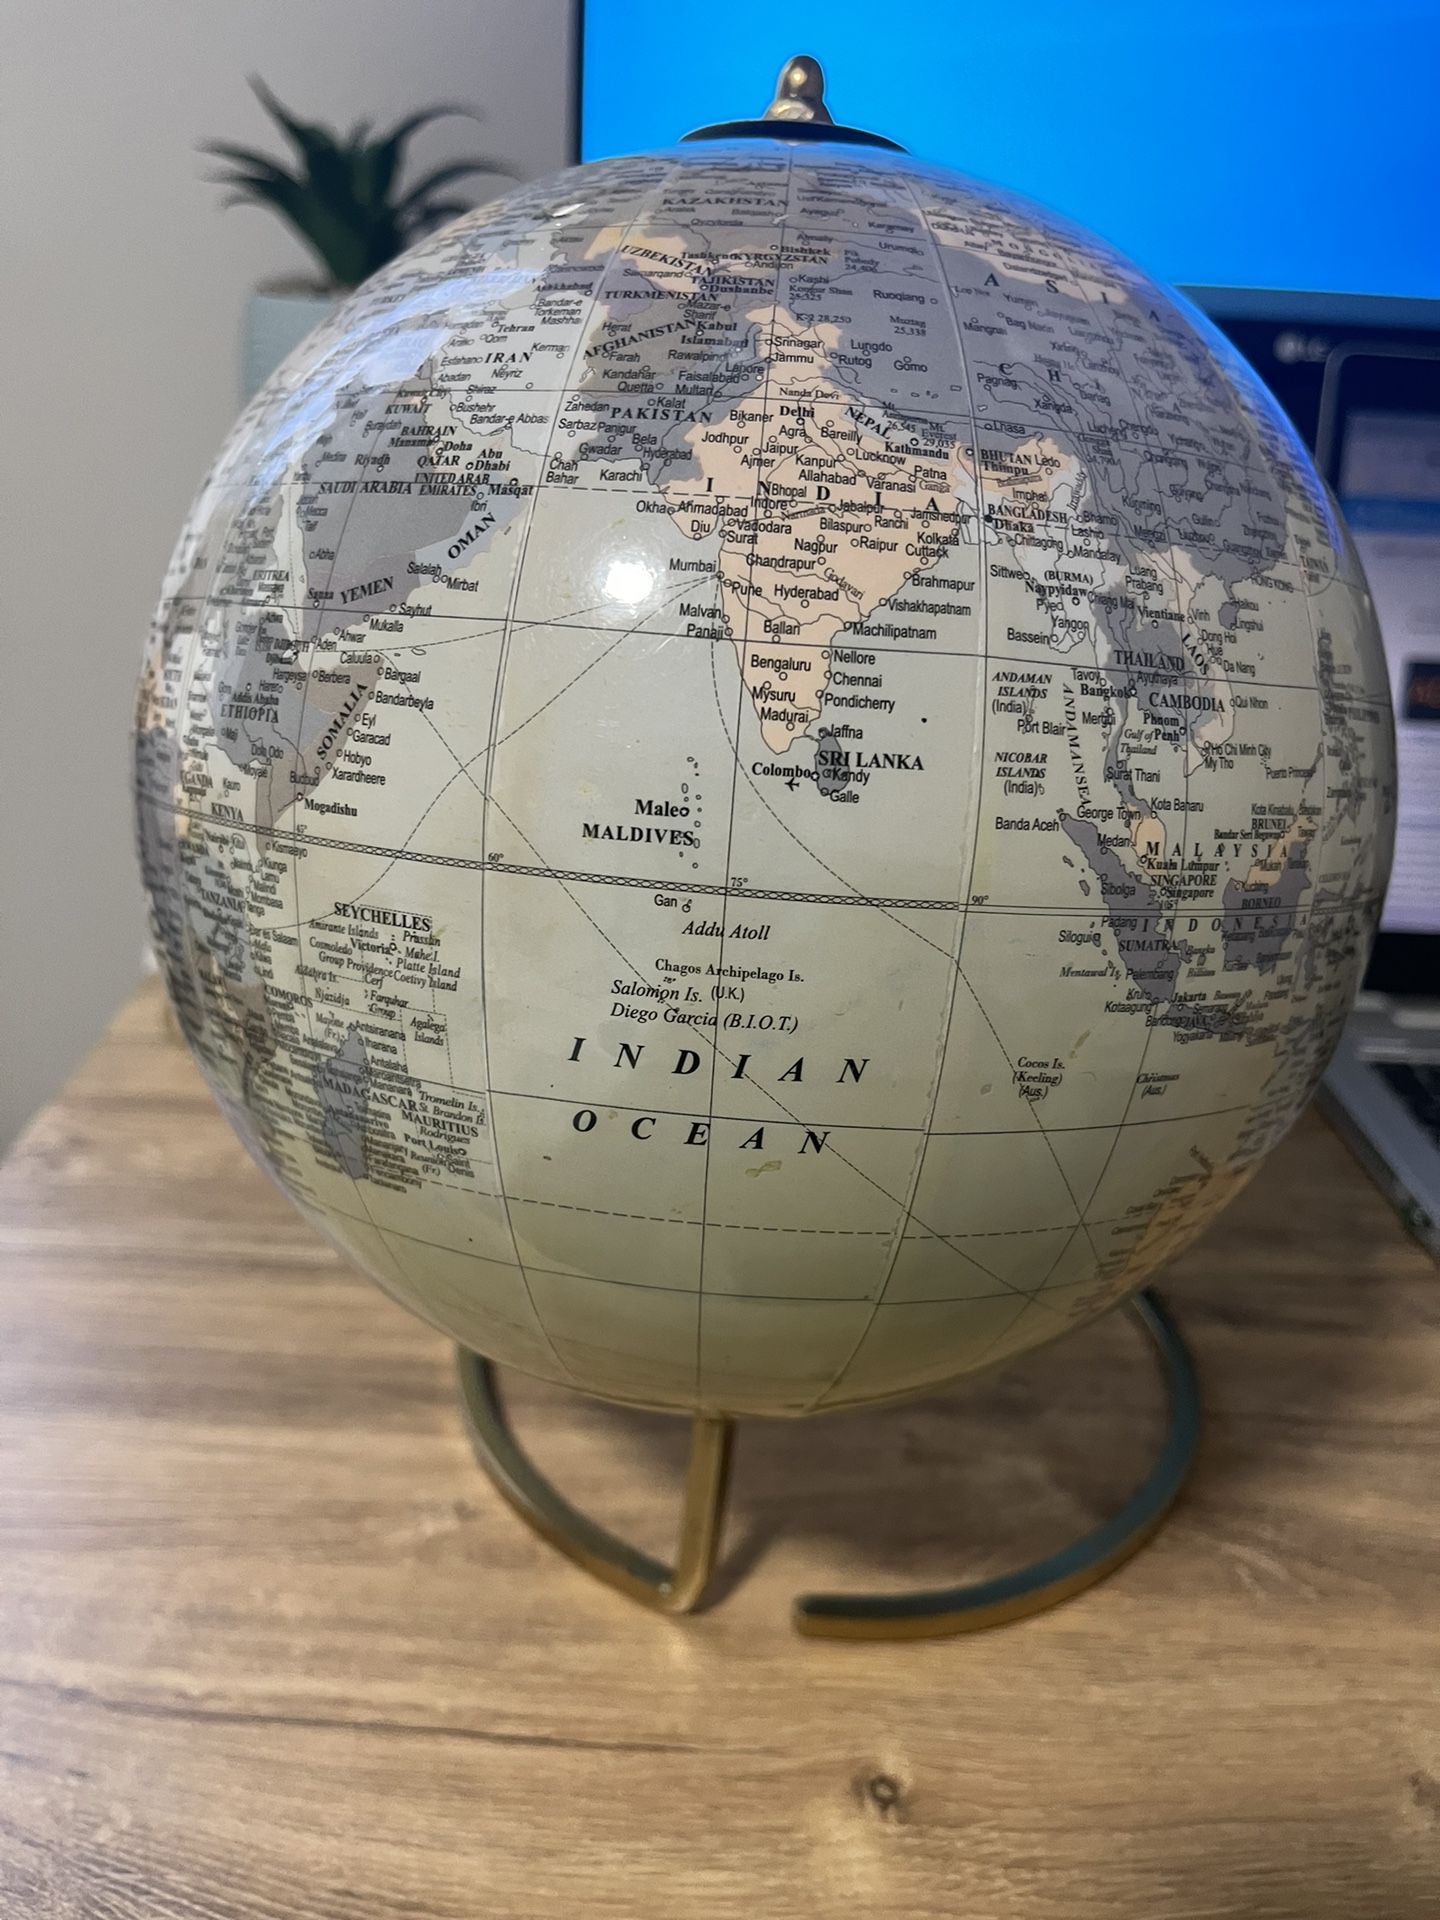 3-D Revolving World Globe